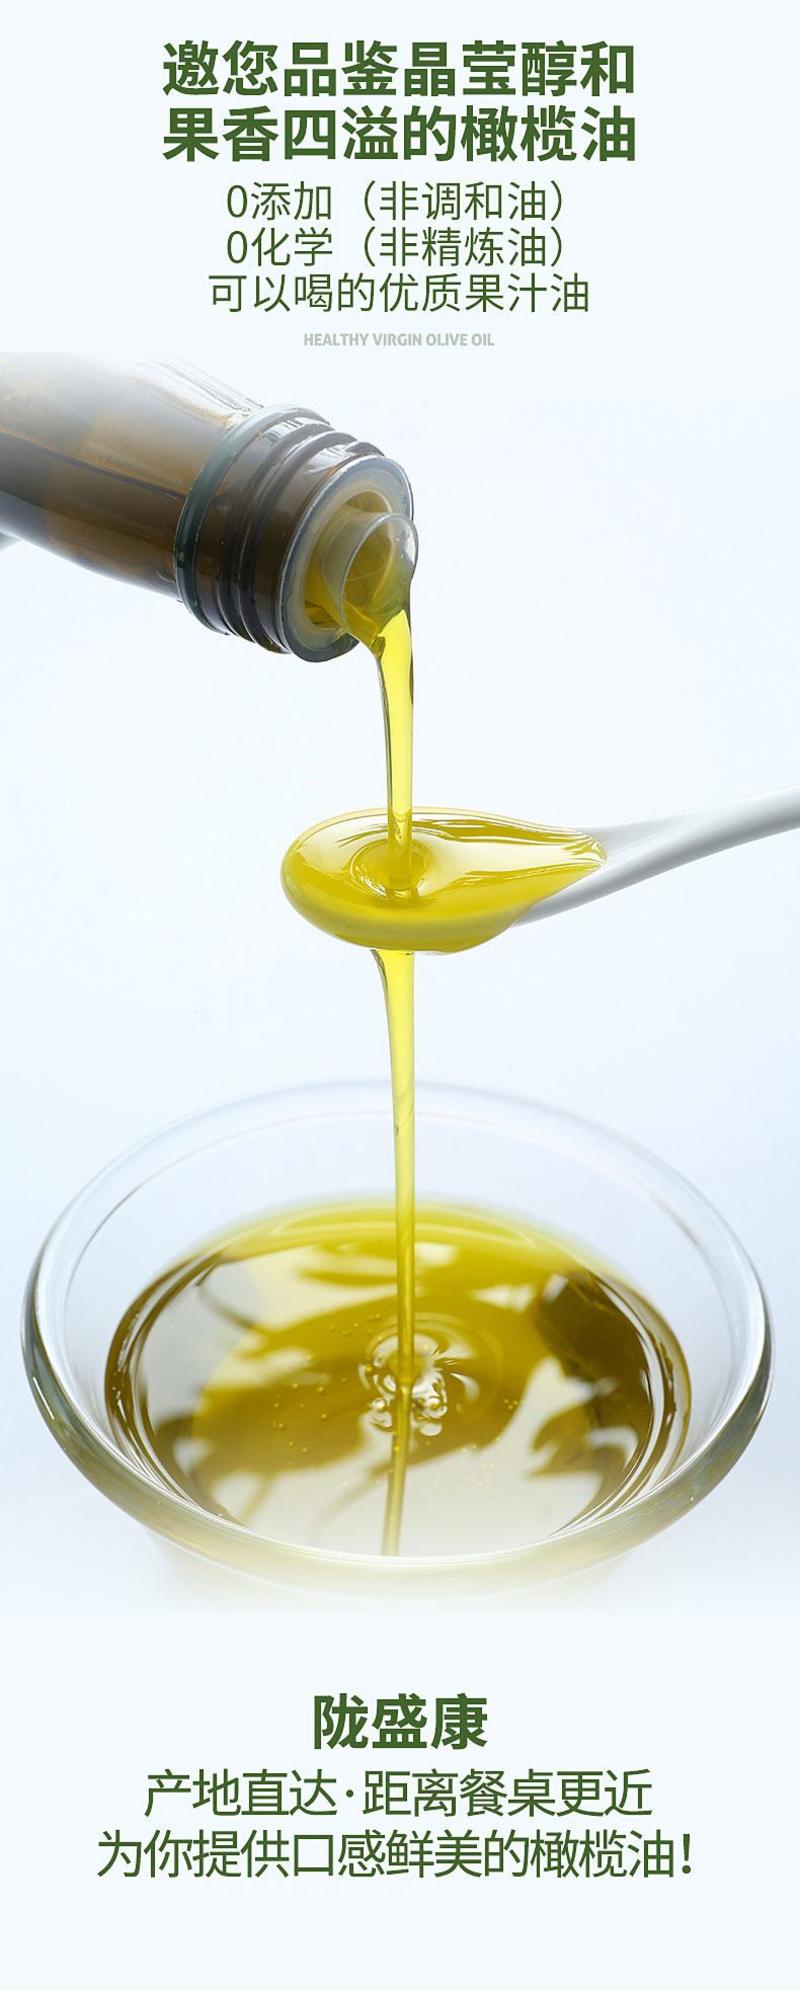 武都特级初榨橄榄油陇南特产护肤烹饪食用油产地新鲜直达